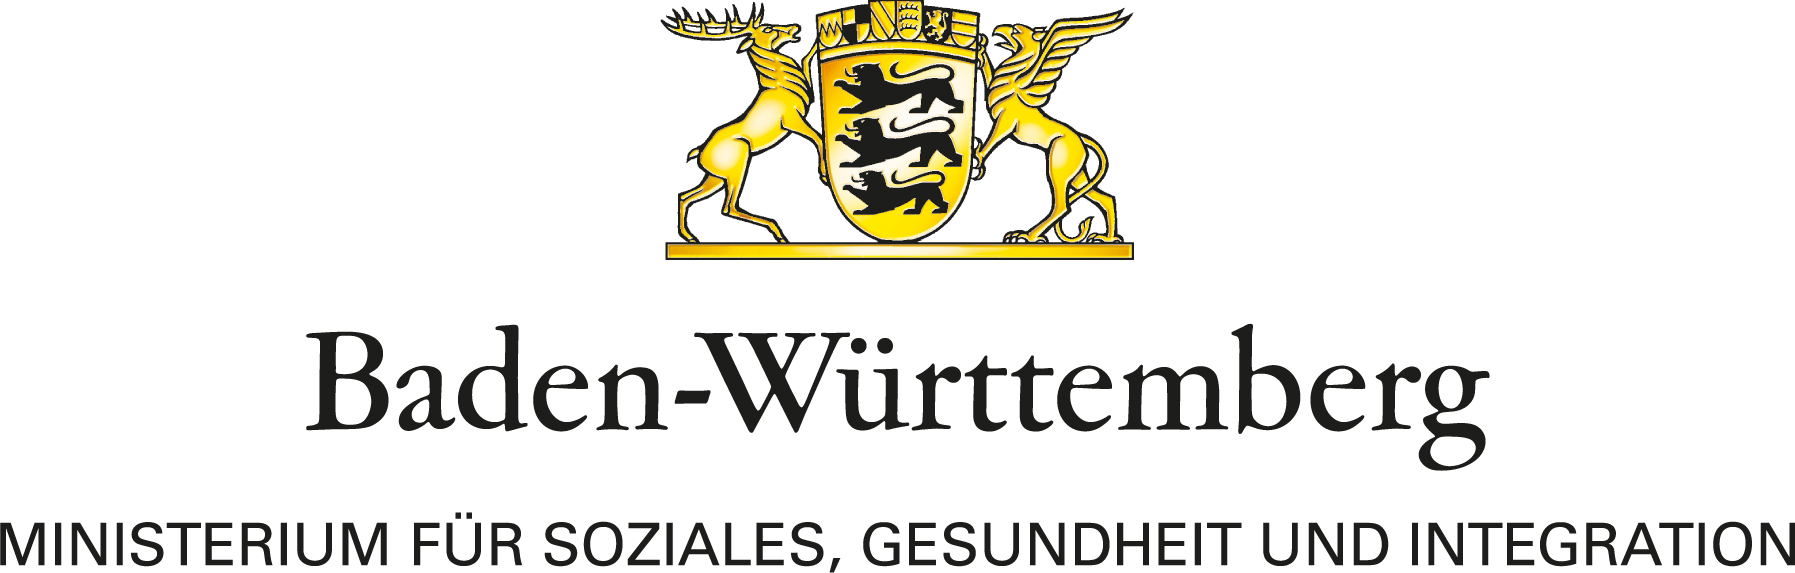 Zu sehen ist das Logo des Ministeriums für Gesundheit, Soziales und Integration Baden-Württemberg.